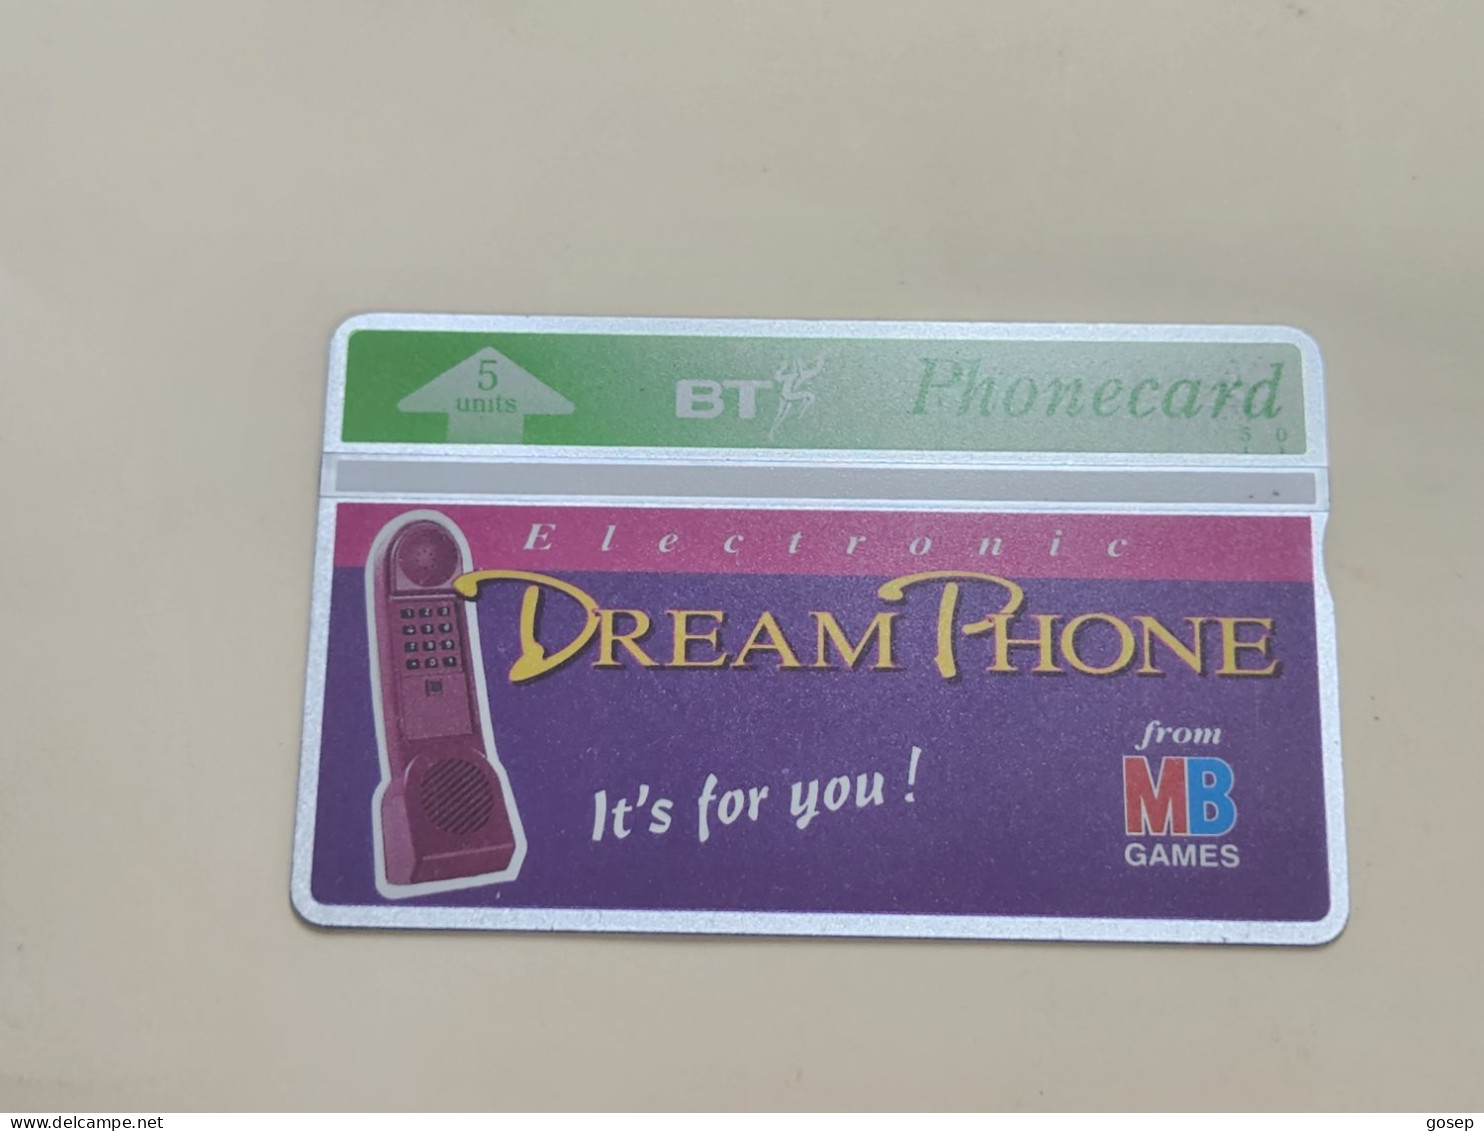 United Kingdom-(BTA061)-DREAM PHONE-(5units)-(104)-(327C93627)-price Cataloge10.00£-used+1card Prepiad Free - BT Werbezwecke